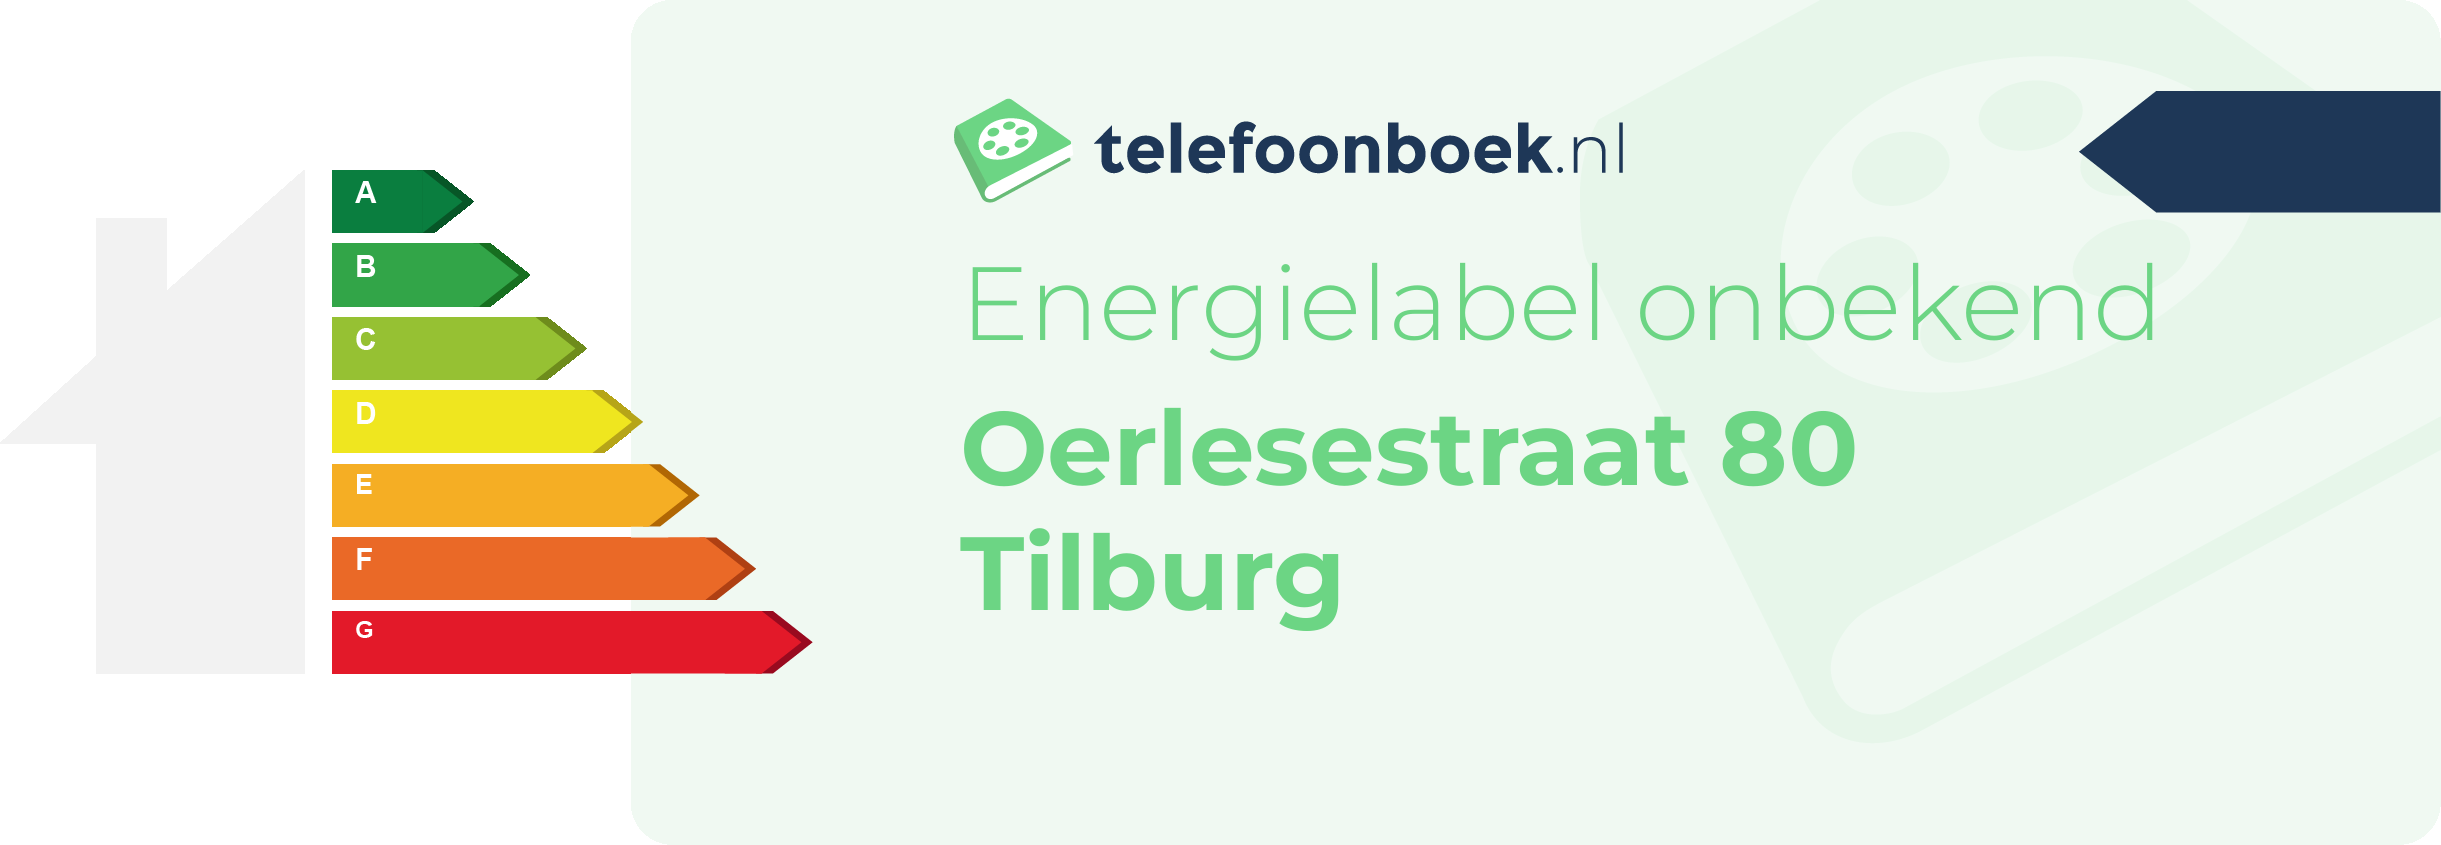 Energielabel Oerlesestraat 80 Tilburg